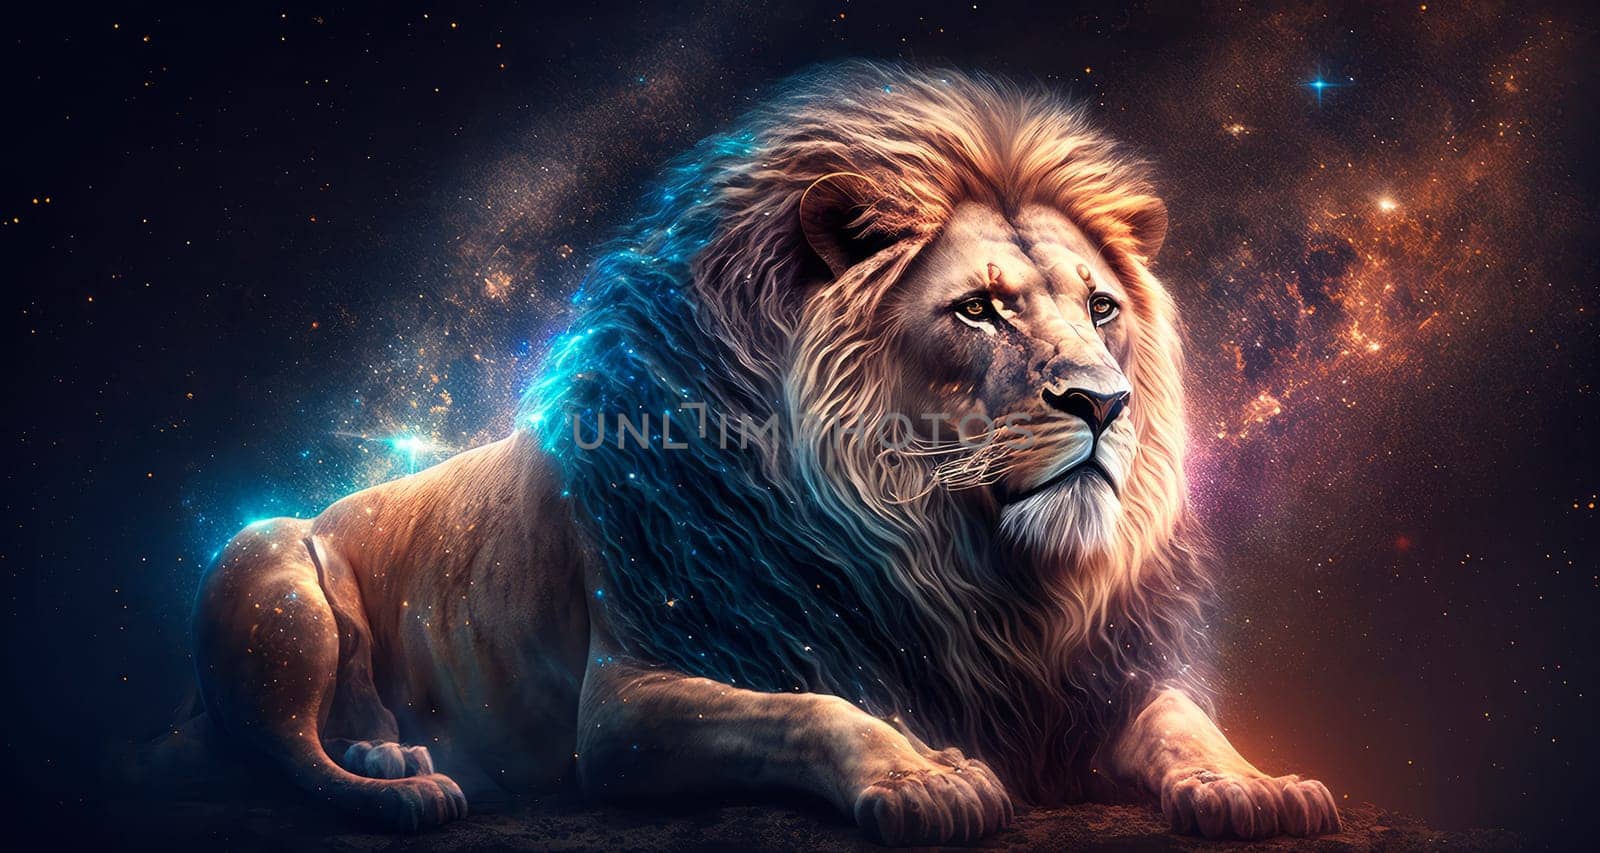 a lion zodiac sign on space background. by yanadjana